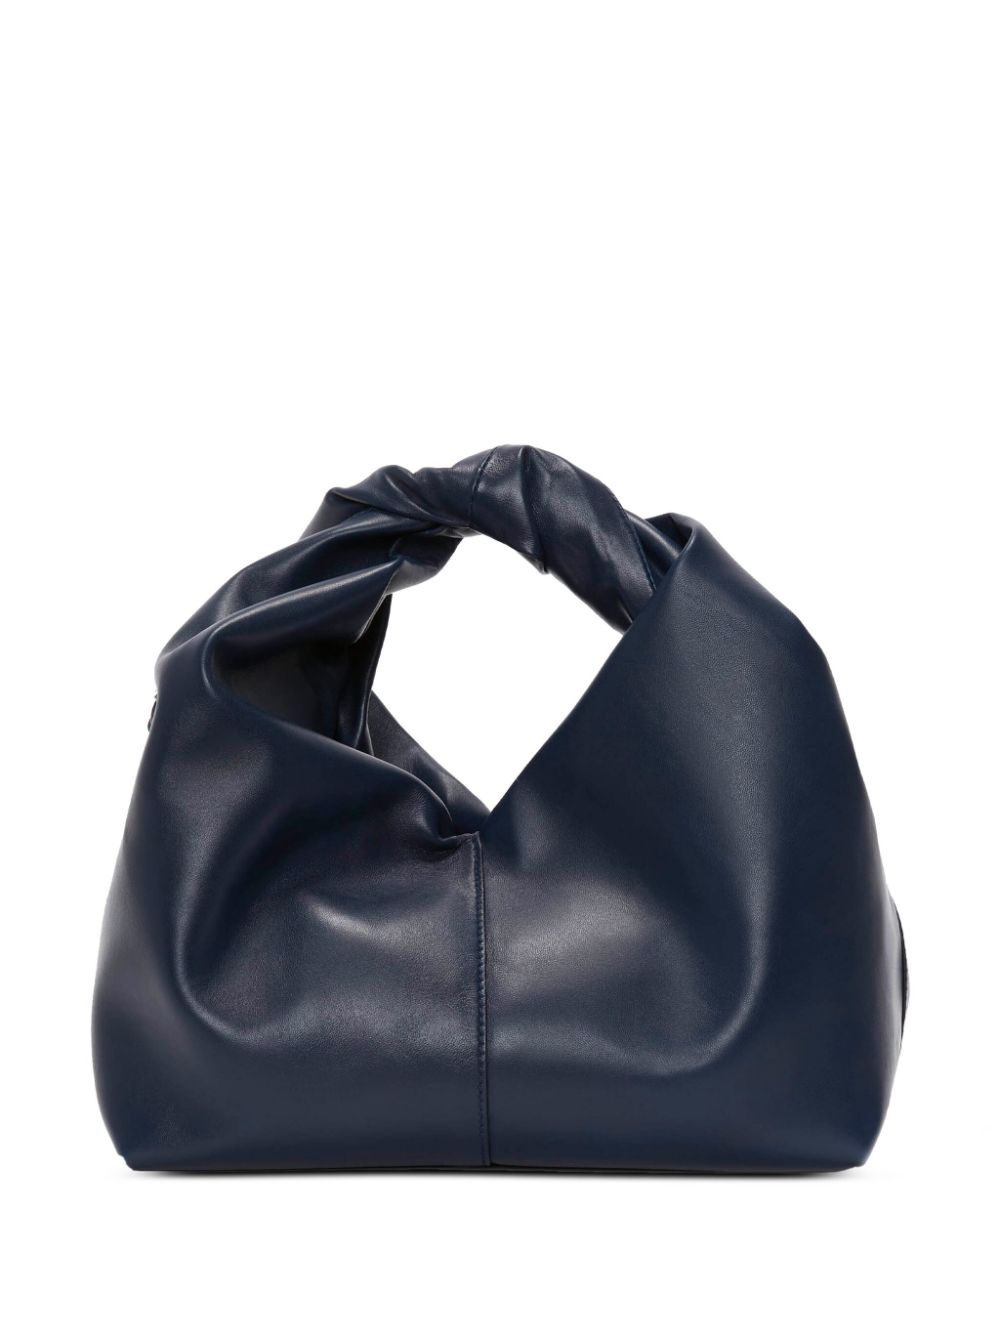 Lancel Hobo leather shoulder bag - ShopStyle